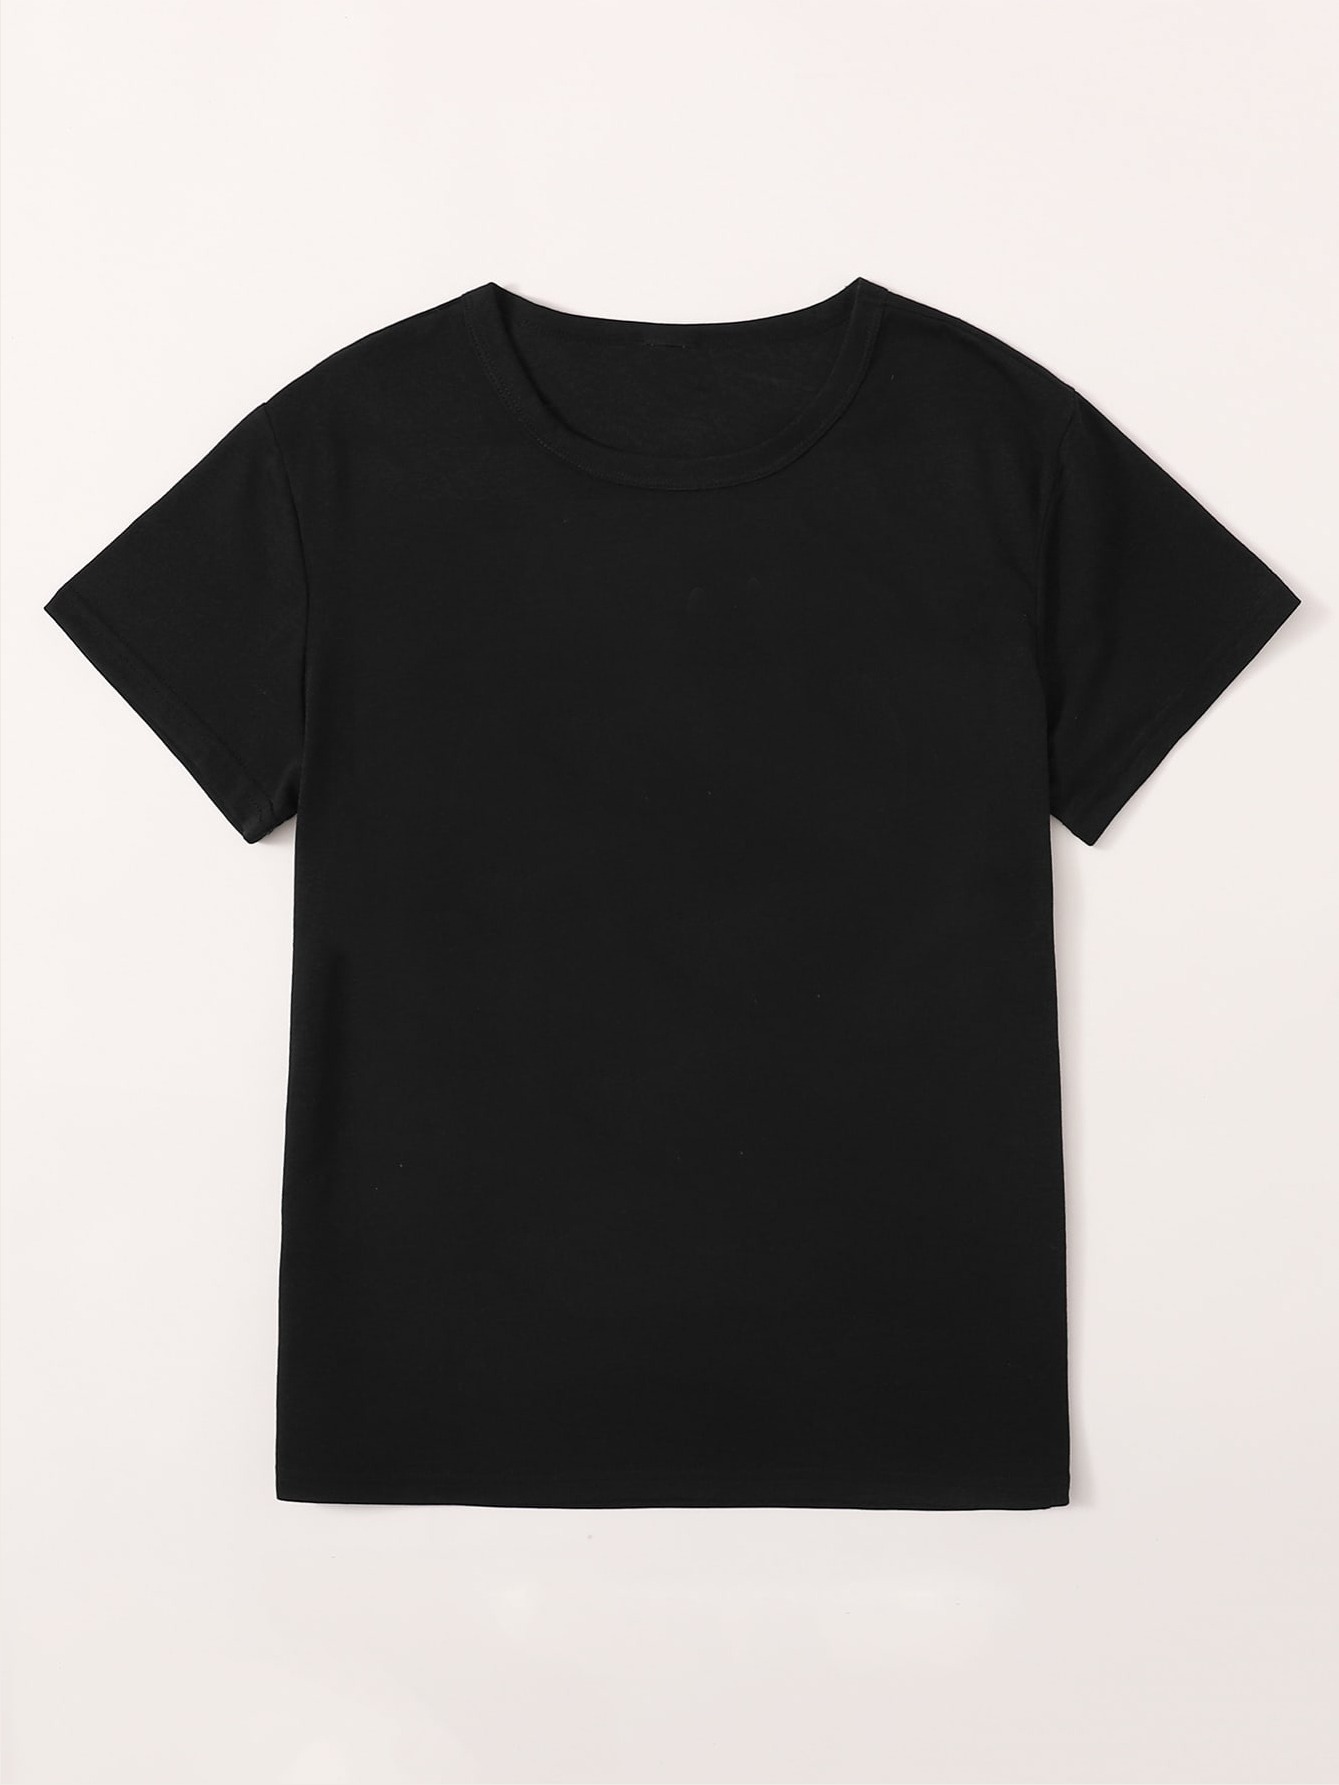 5 camisas negras para hombre